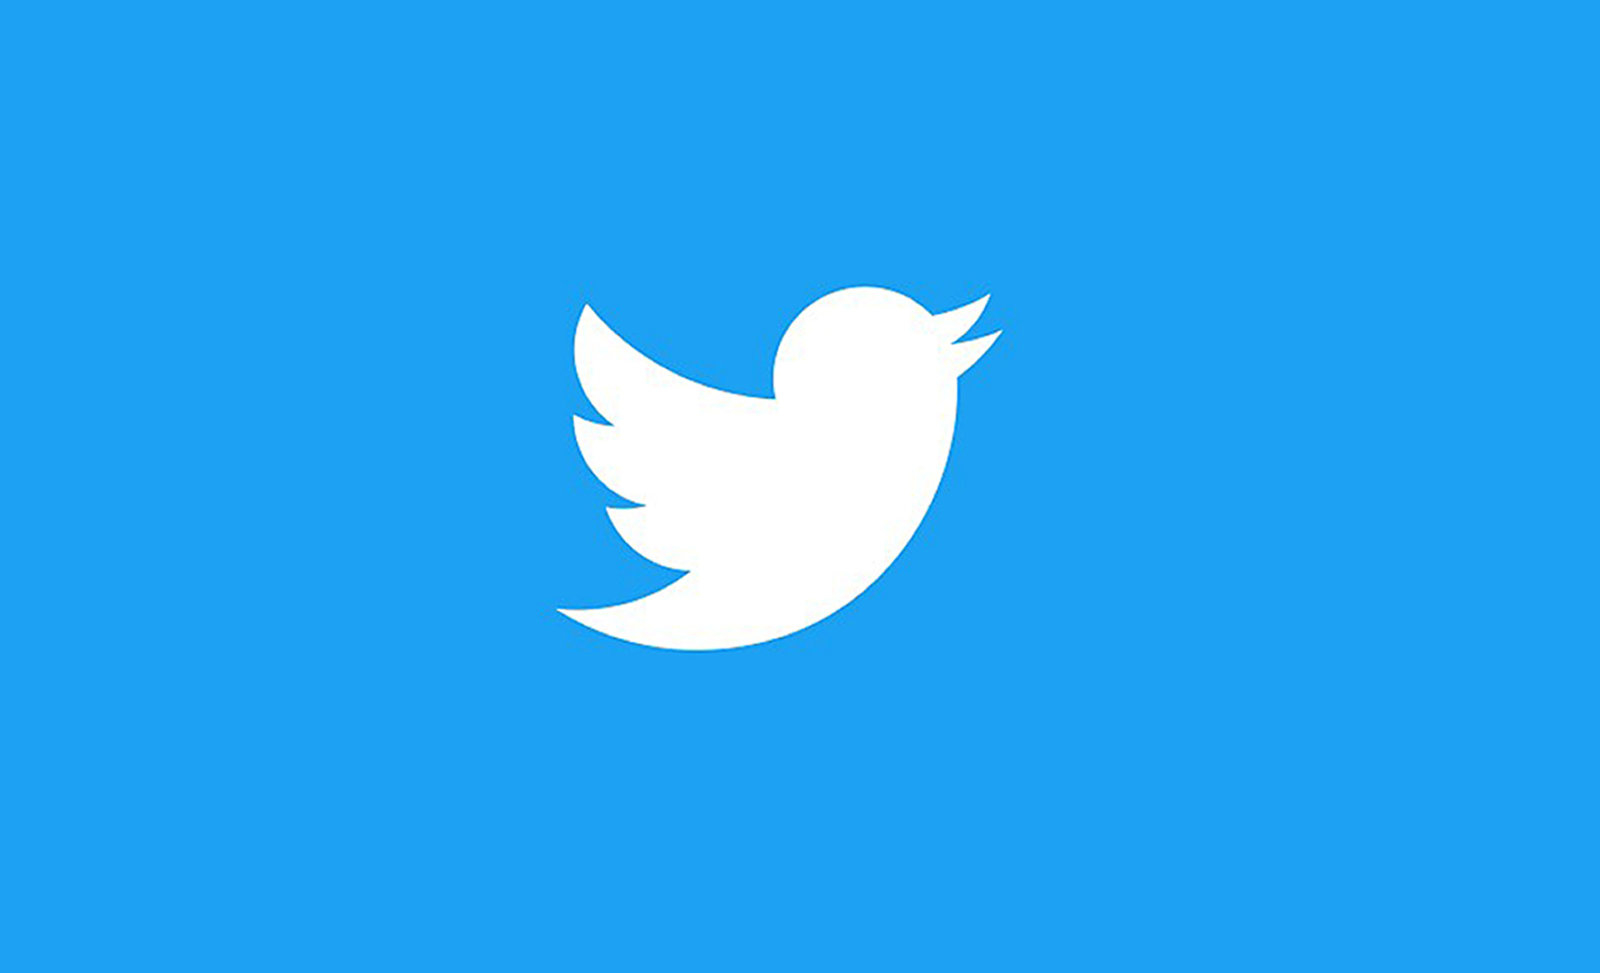 تقوم تويتر بإطلاق ميزة جدولة التغريدات لبعض المستخدمين